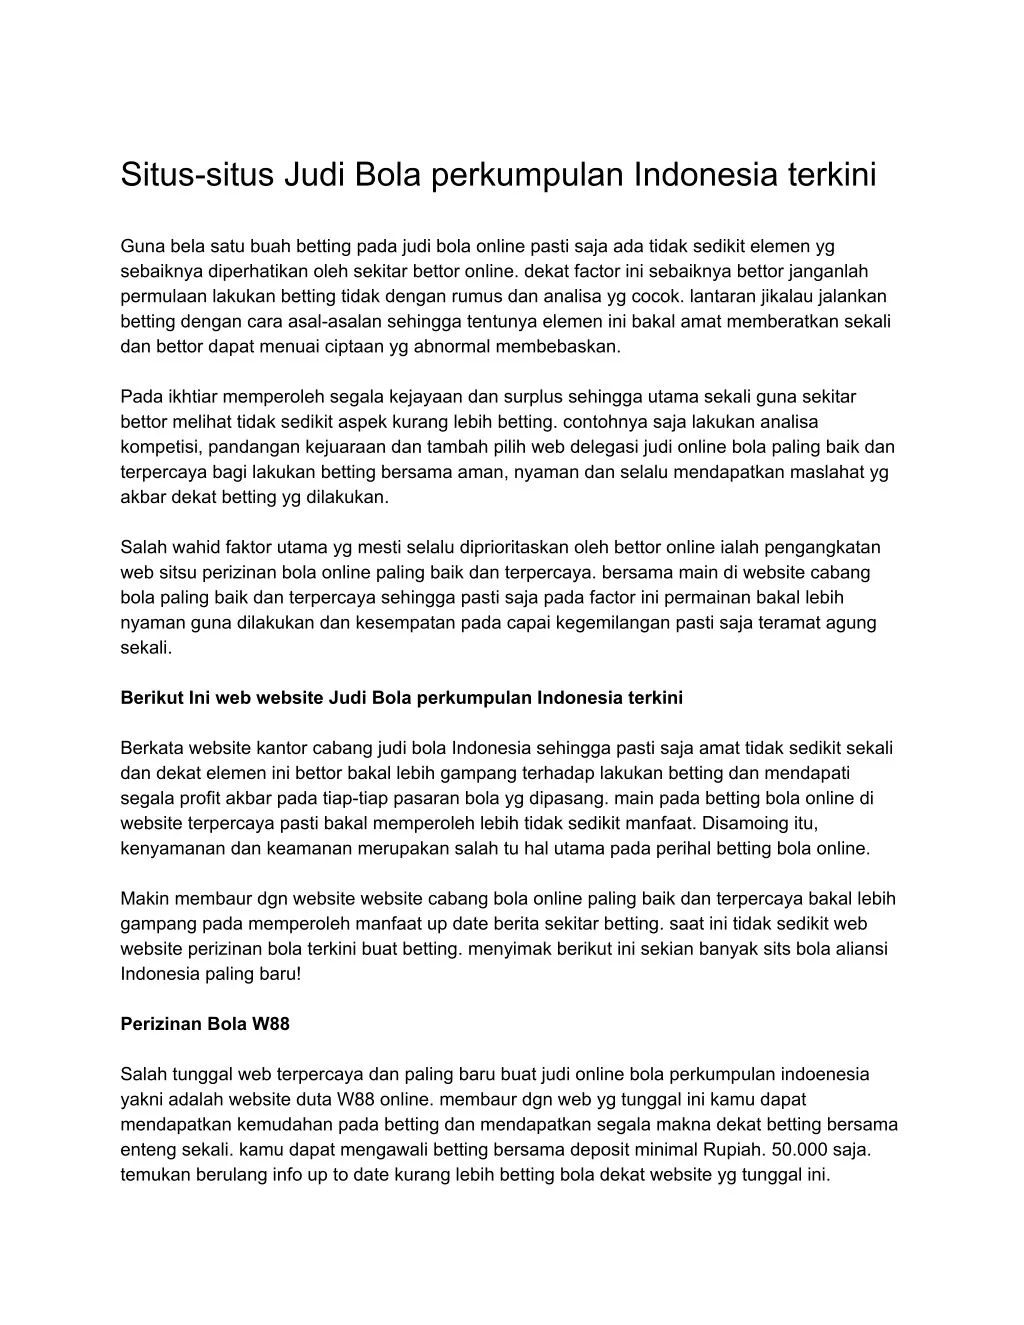 situs situs judi bola perkumpulan indonesia